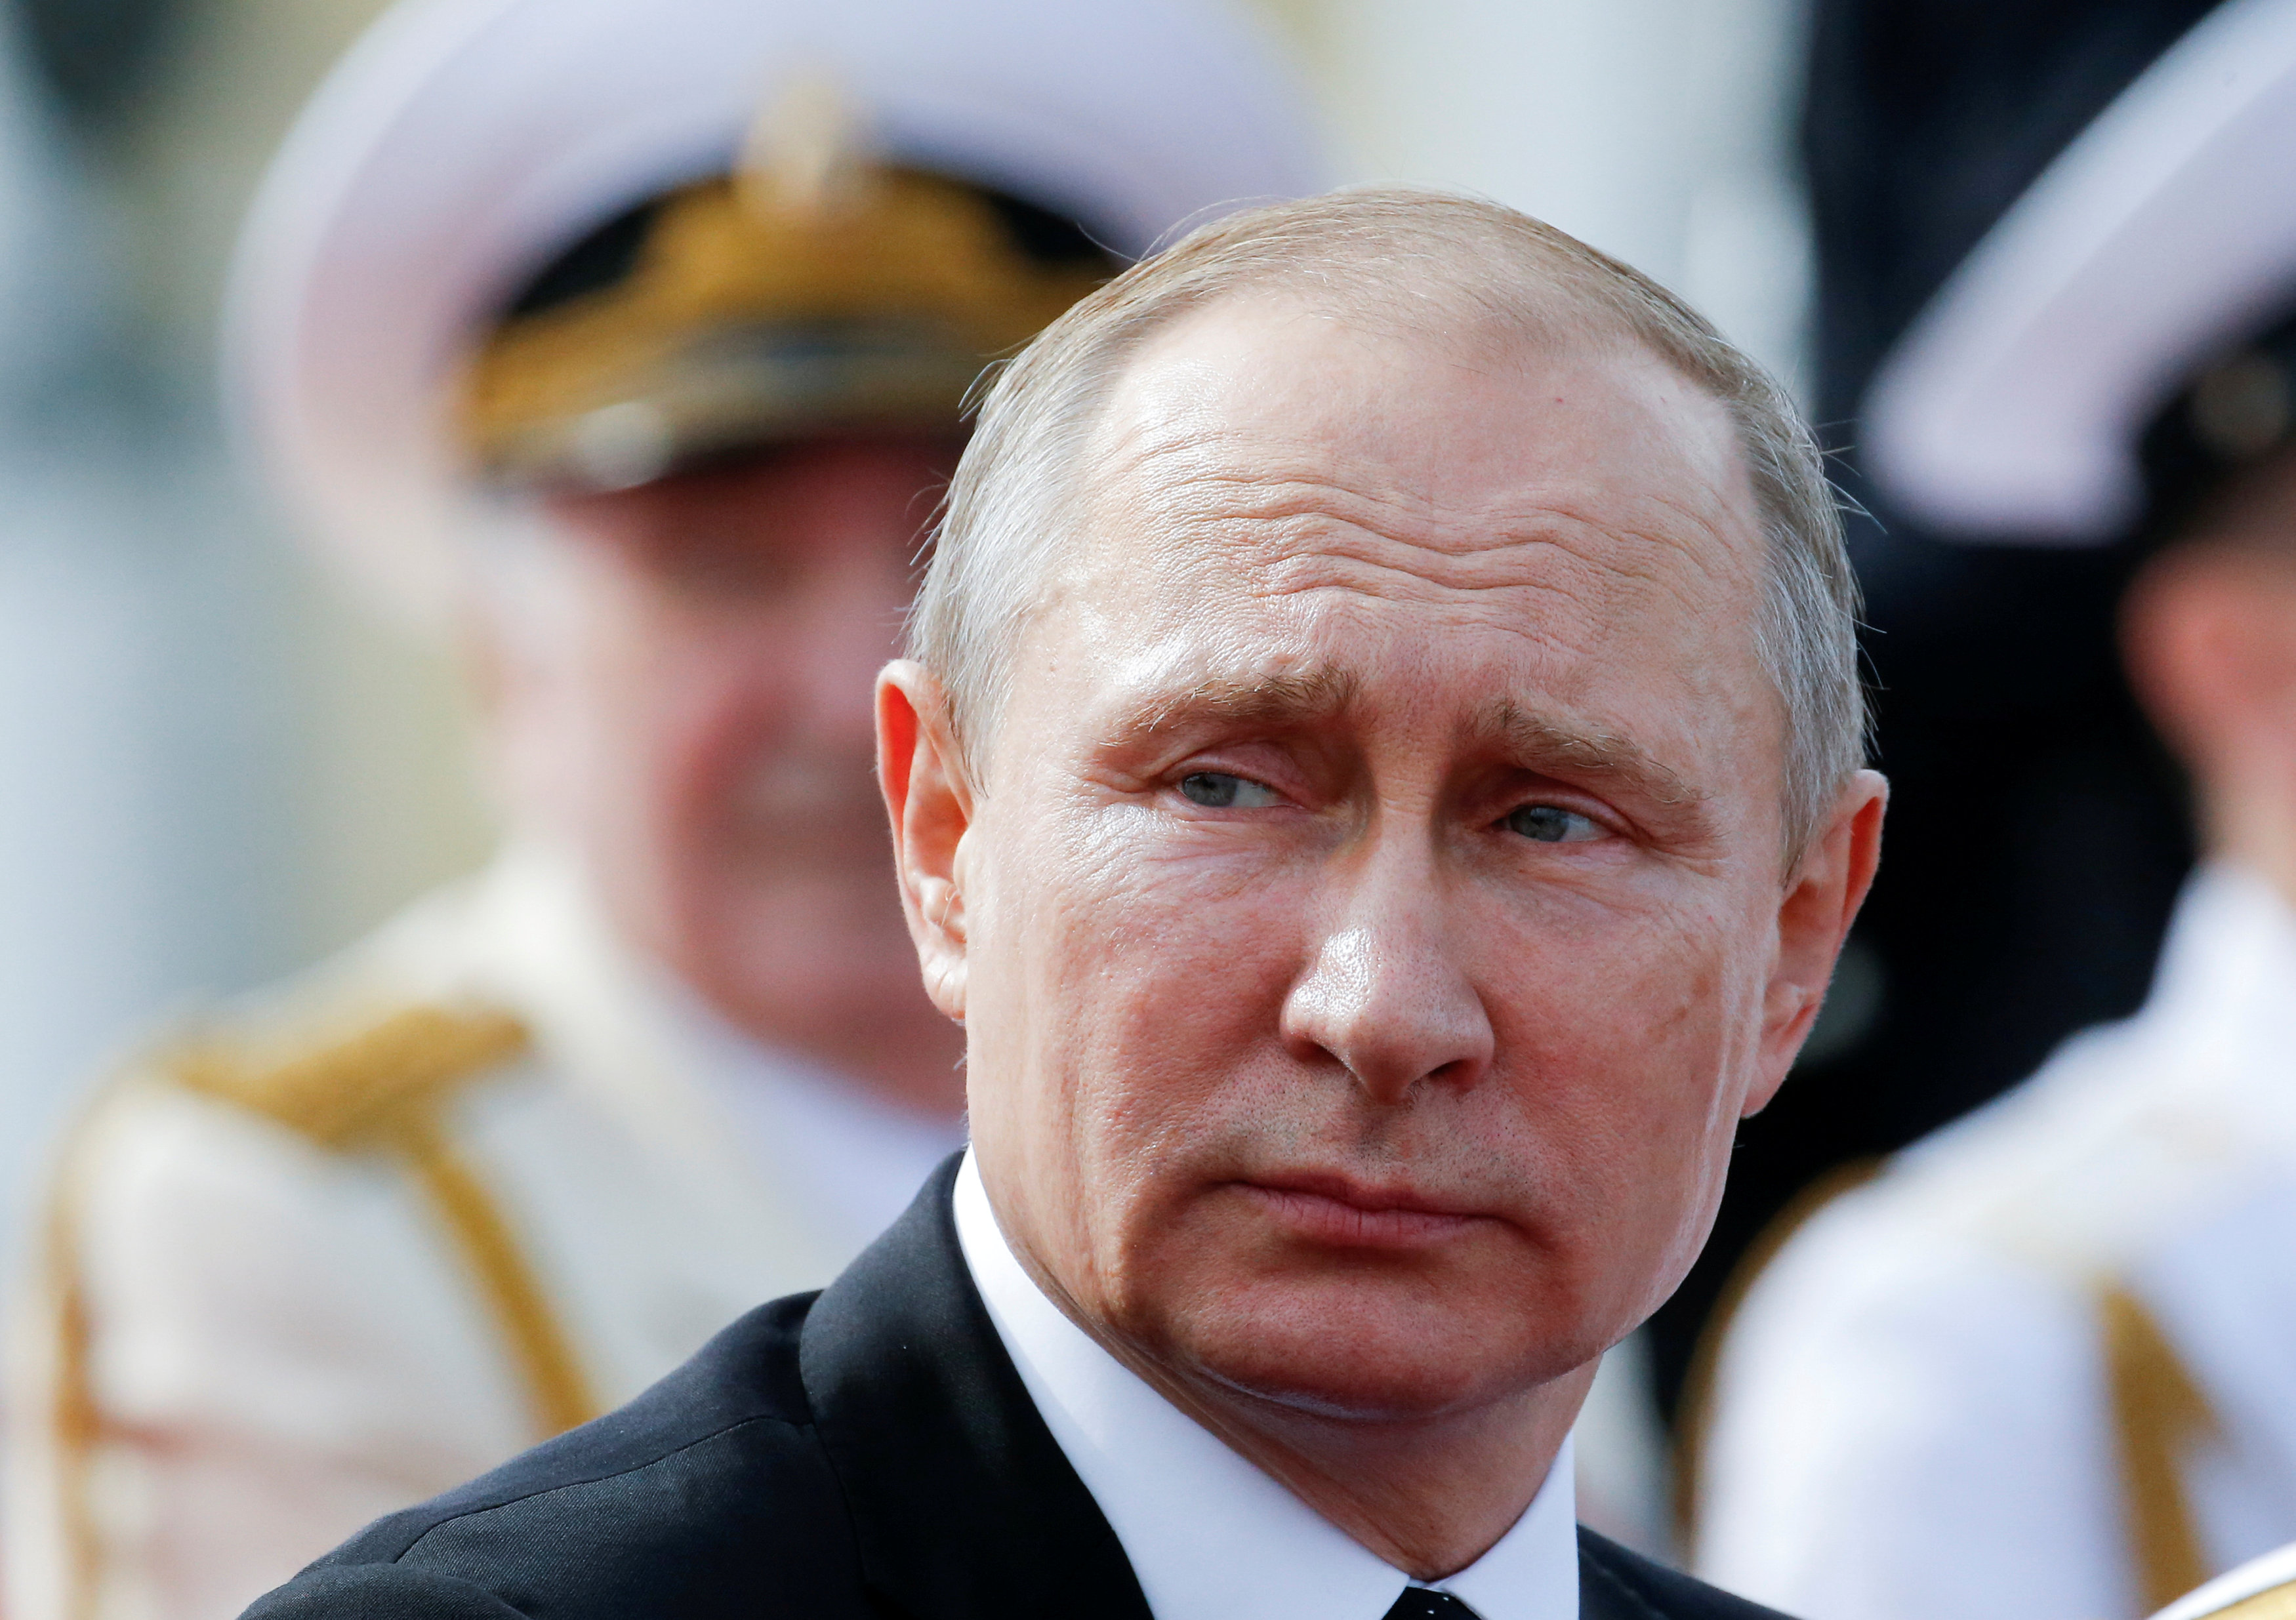 Putin aseguró que la campaña presidencial se llevará a cabo en estricta conformidad con la Constitución.